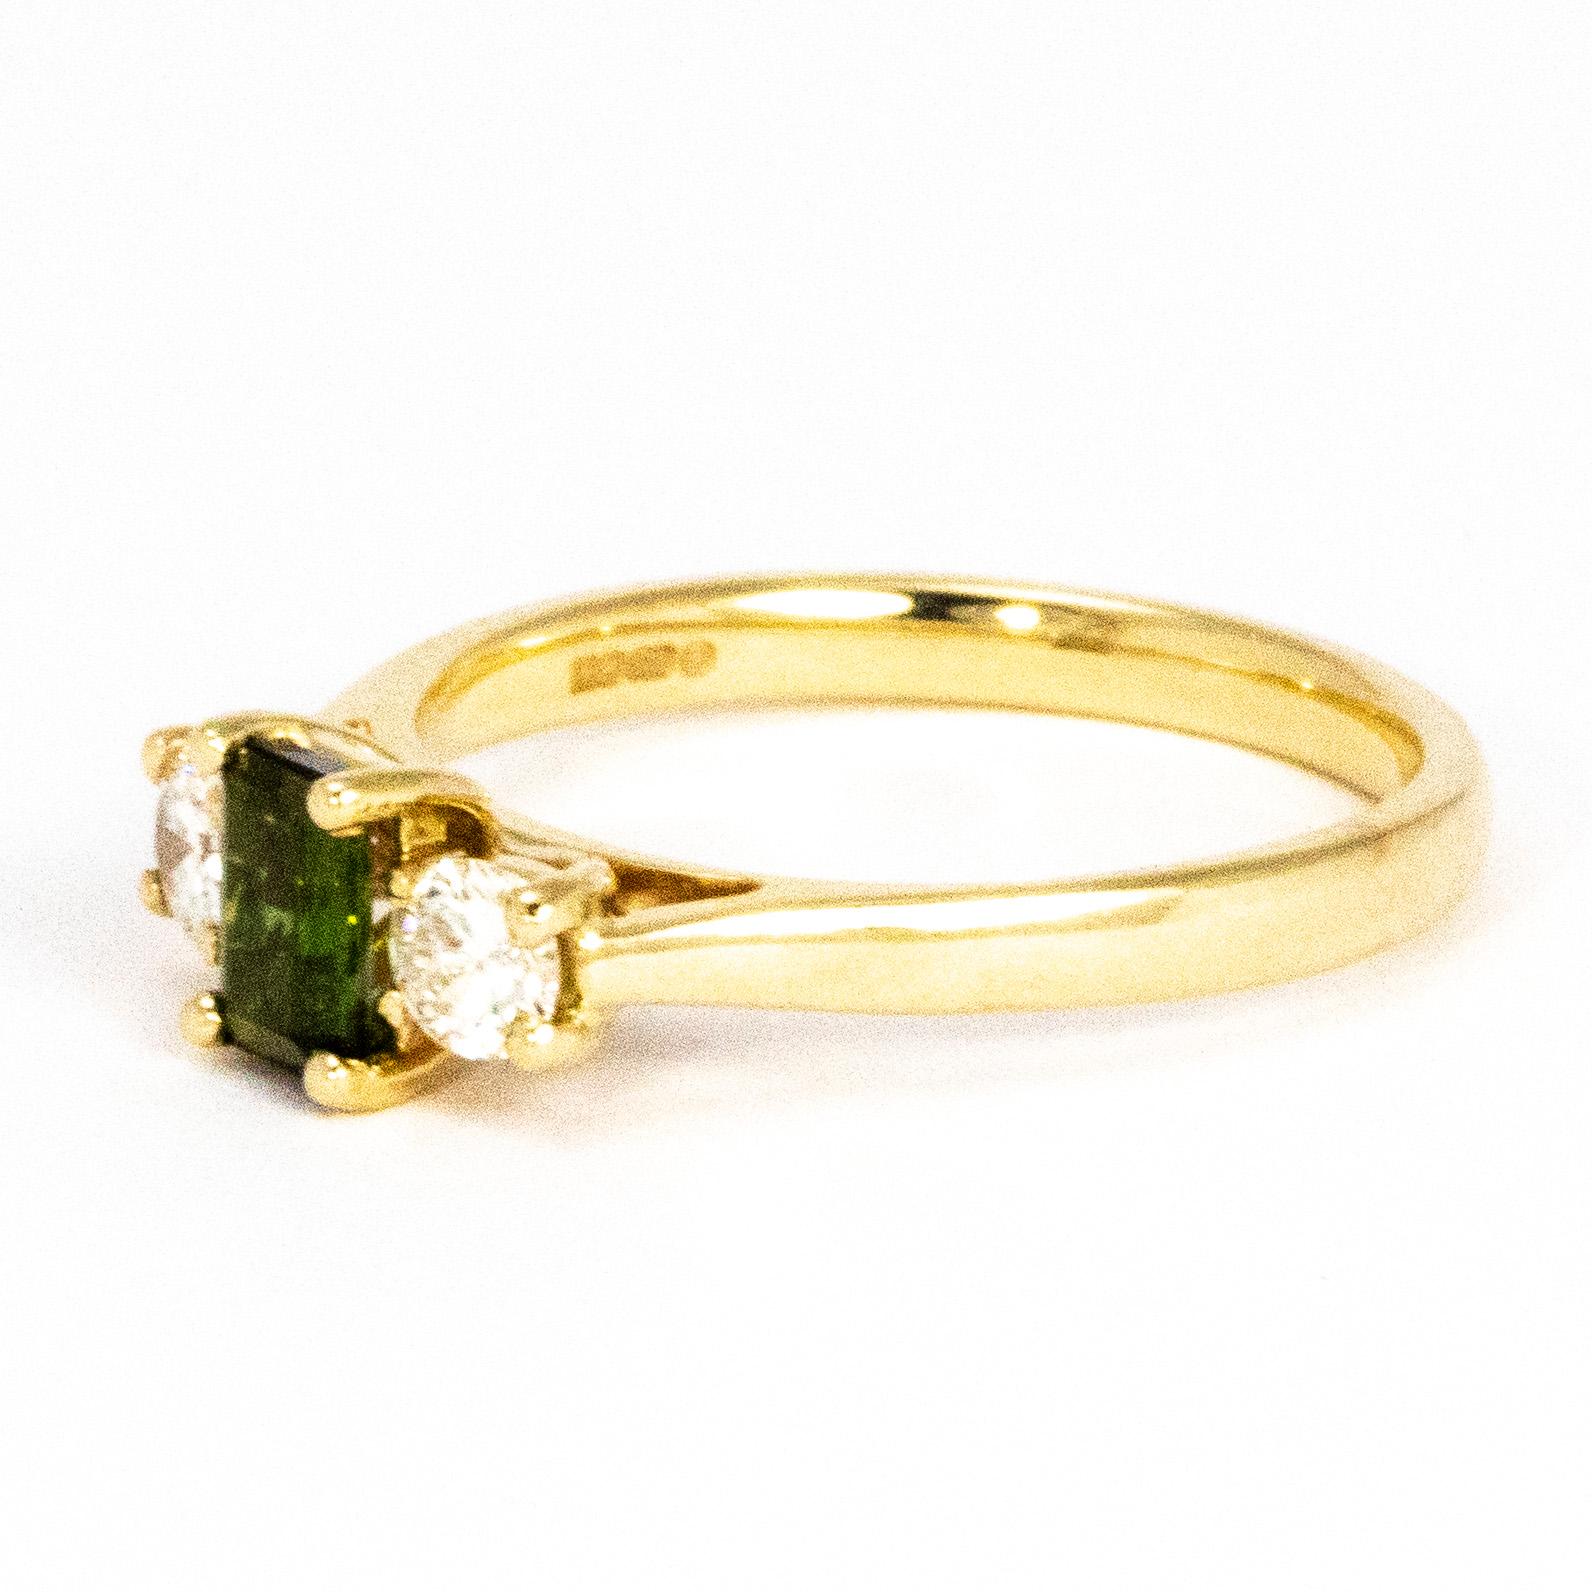 Die prächtige Farbe dieses Turmalins im Smaragdschliff wird durch die hellen Diamanten an den Seiten wunderbar ergänzt. Der Turmalin hat einen Durchmesser von 60 Pence und die Diamanten jeweils 20 Pence.

Ringgröße: N 1/2 oder 7